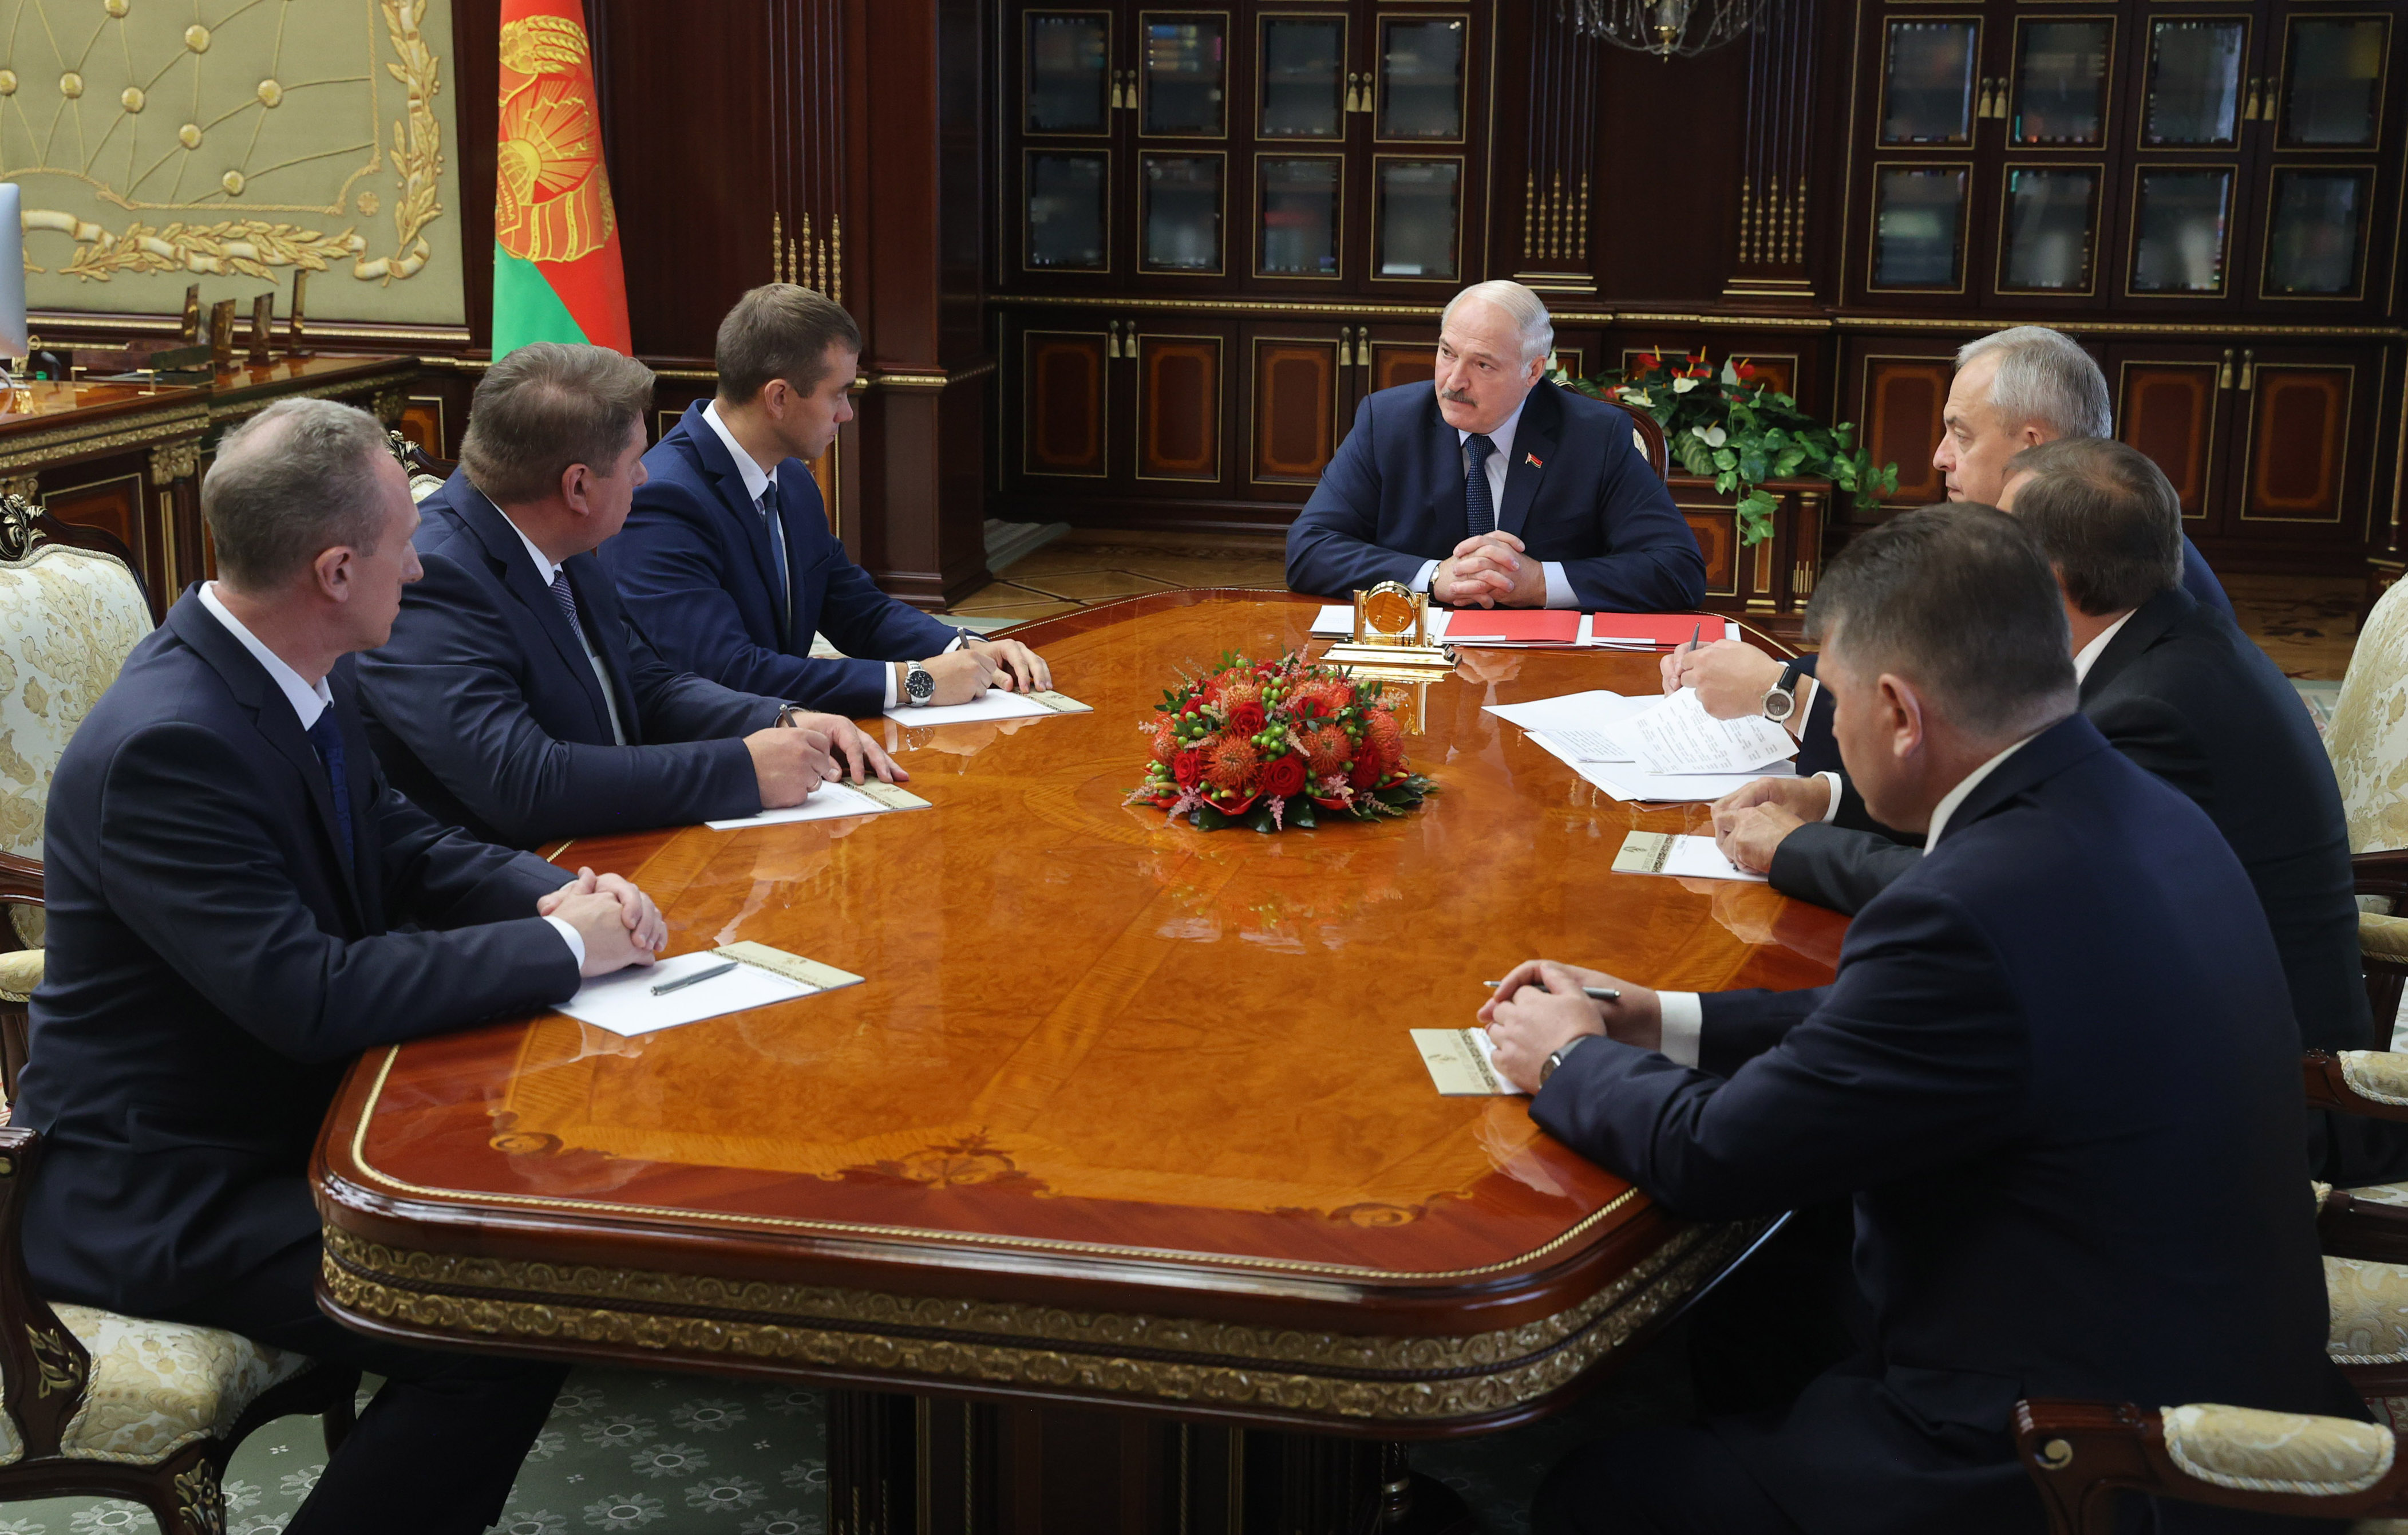 Александр Лукашенко: "Быть преданными своему народу и государству - главные качества управленцев"